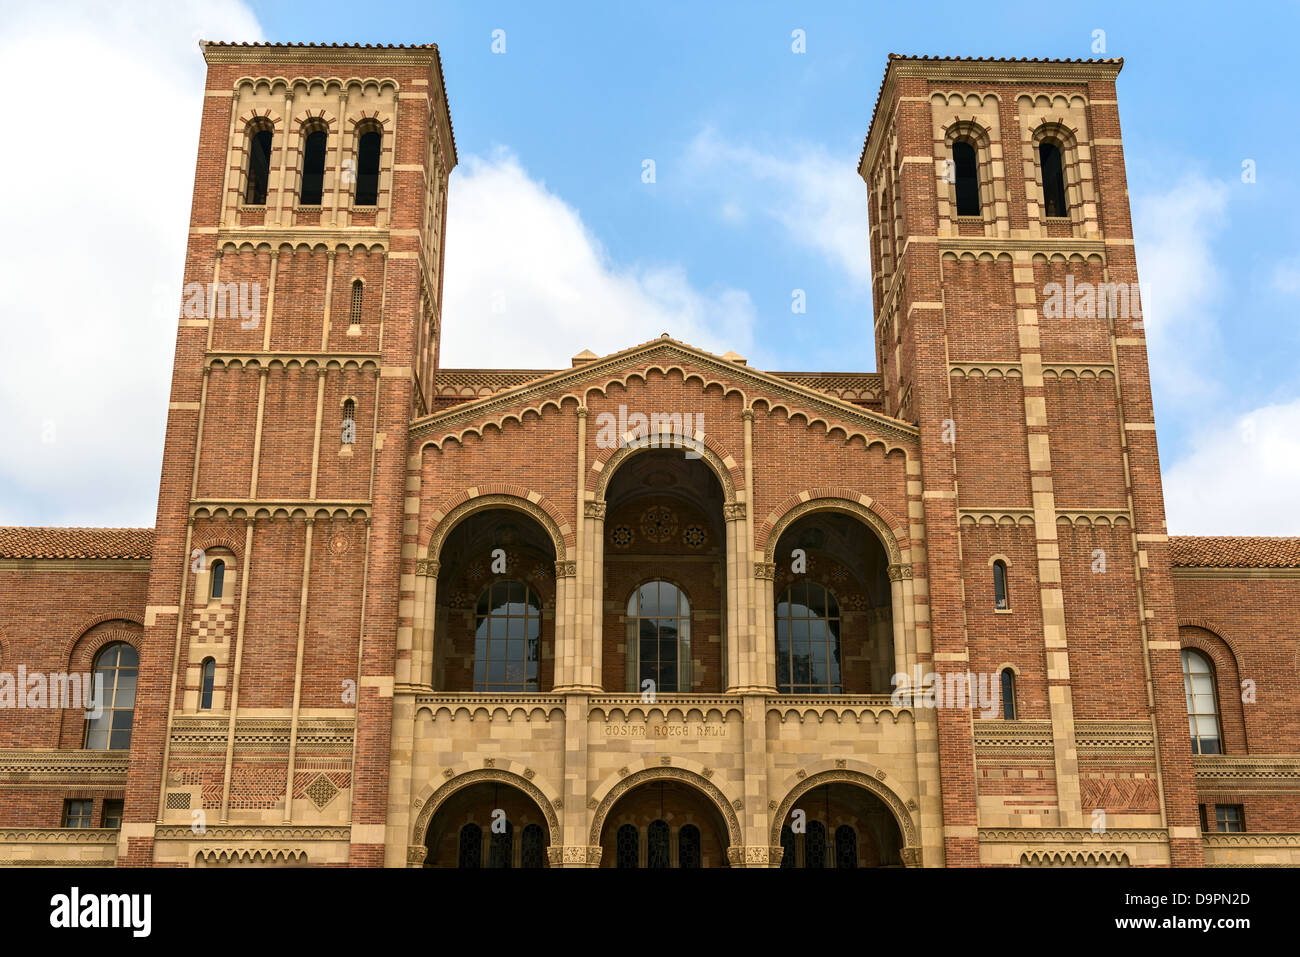 La célèbre Royce hall de l'UCLA, l'Université de Californie, Los Angeles. Banque D'Images